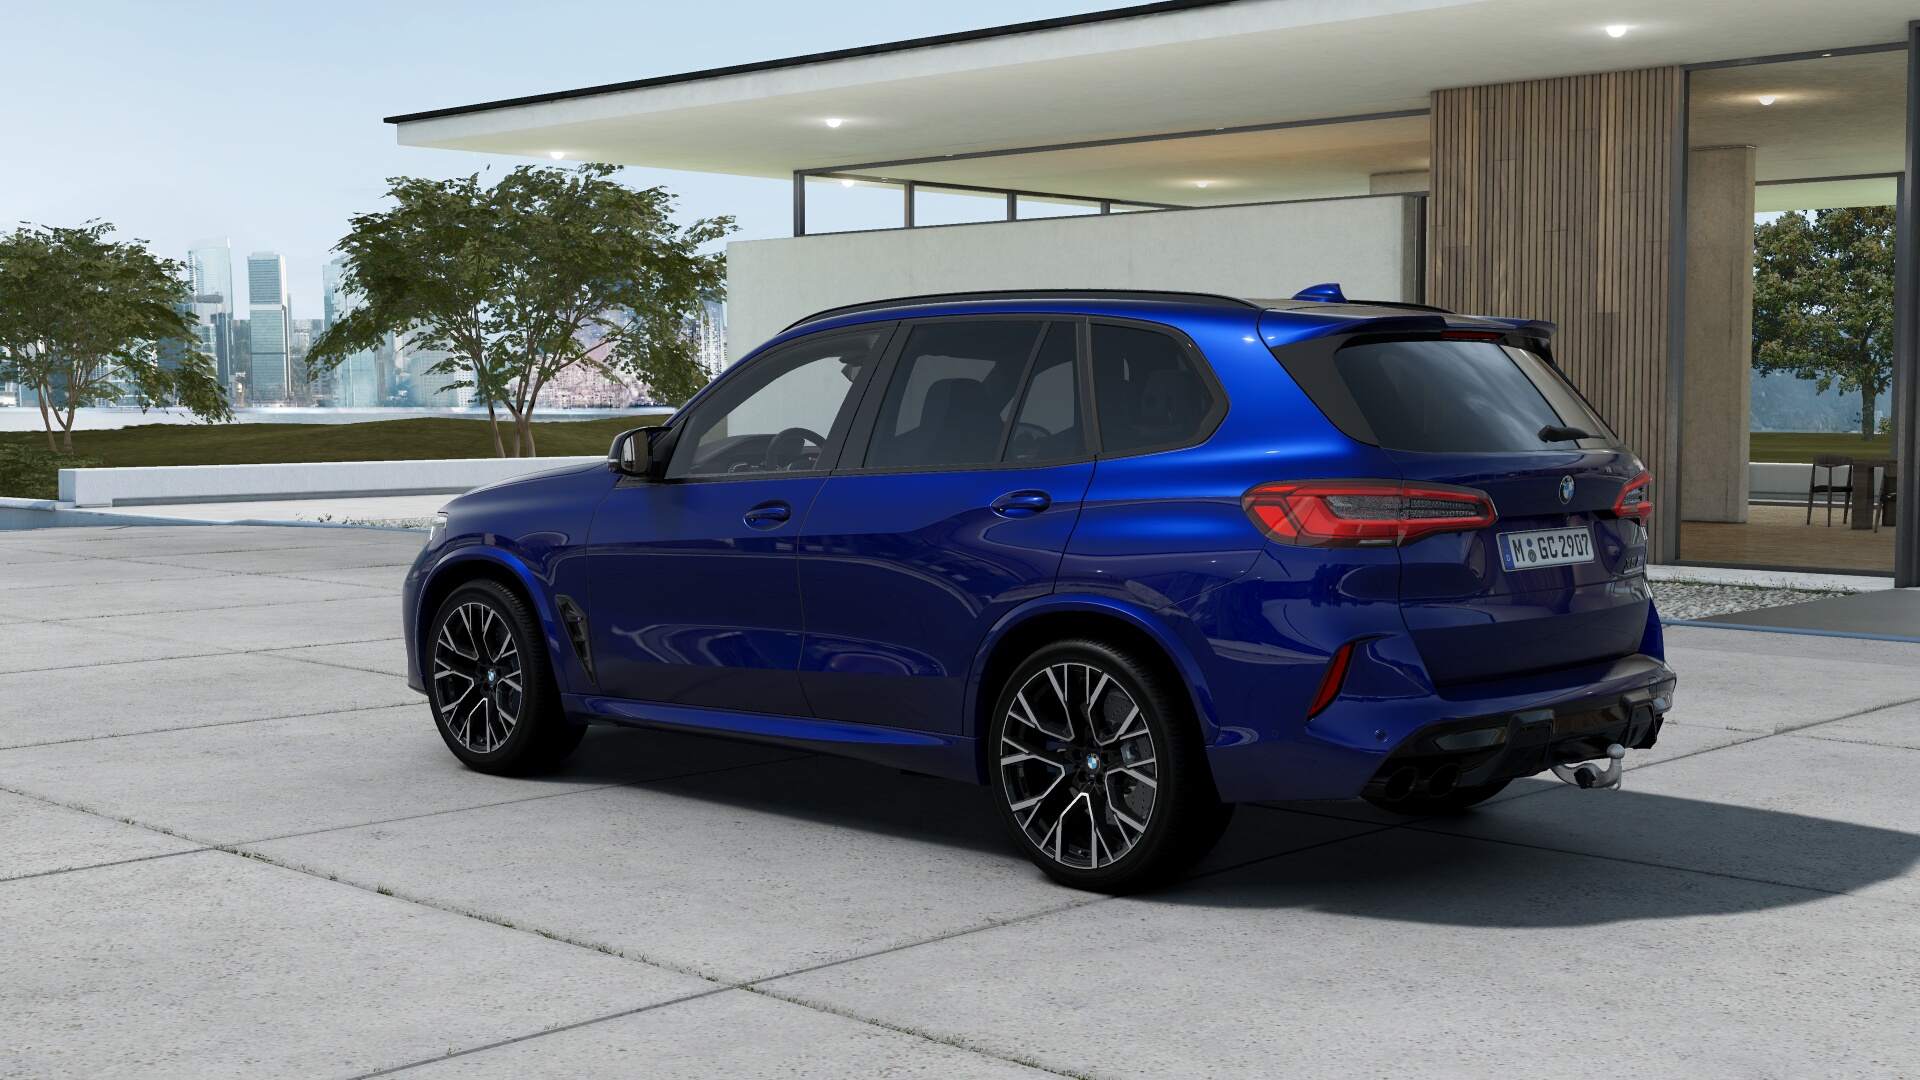 BMW X5 M COMPETITION xDrive | nejsportovnější SUV s luxusním interiérem | motor V8 biturbo 625 koní | maximální výbava | nové auto | super cena | výprodej | nákup online na AUTOiBUY.com